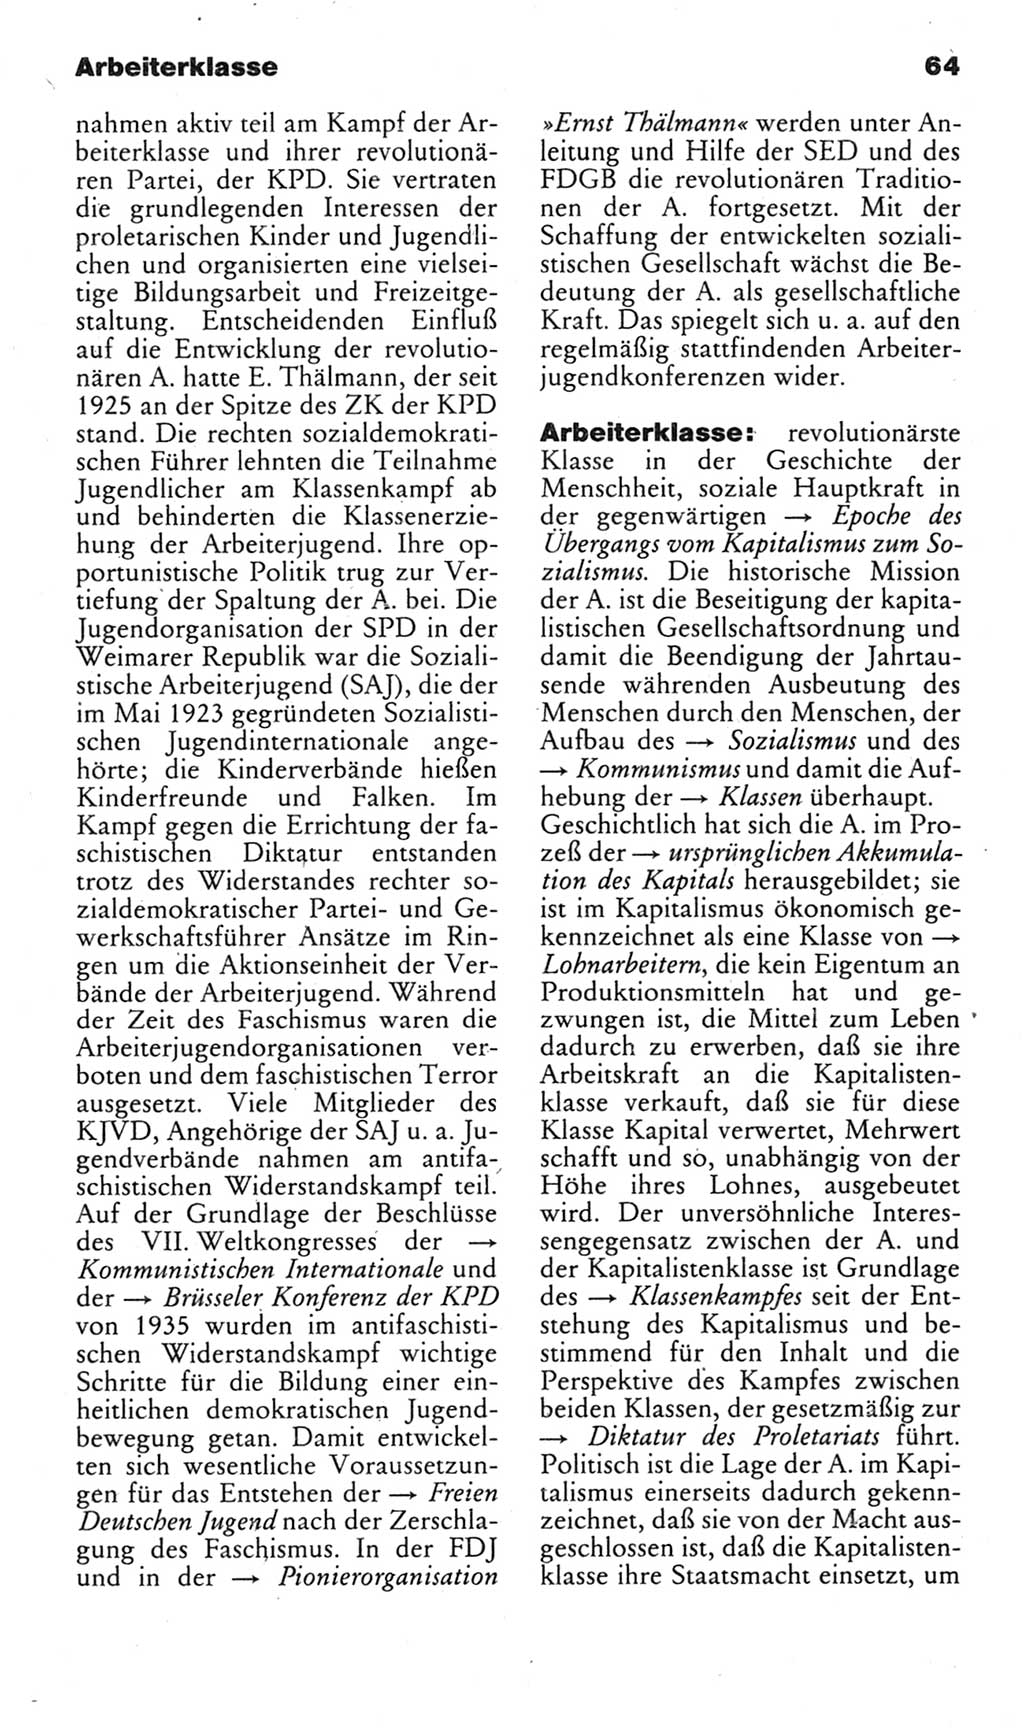 Kleines politisches Wörterbuch [Deutsche Demokratische Republik (DDR)] 1985, Seite 64 (Kl. pol. Wb. DDR 1985, S. 64)